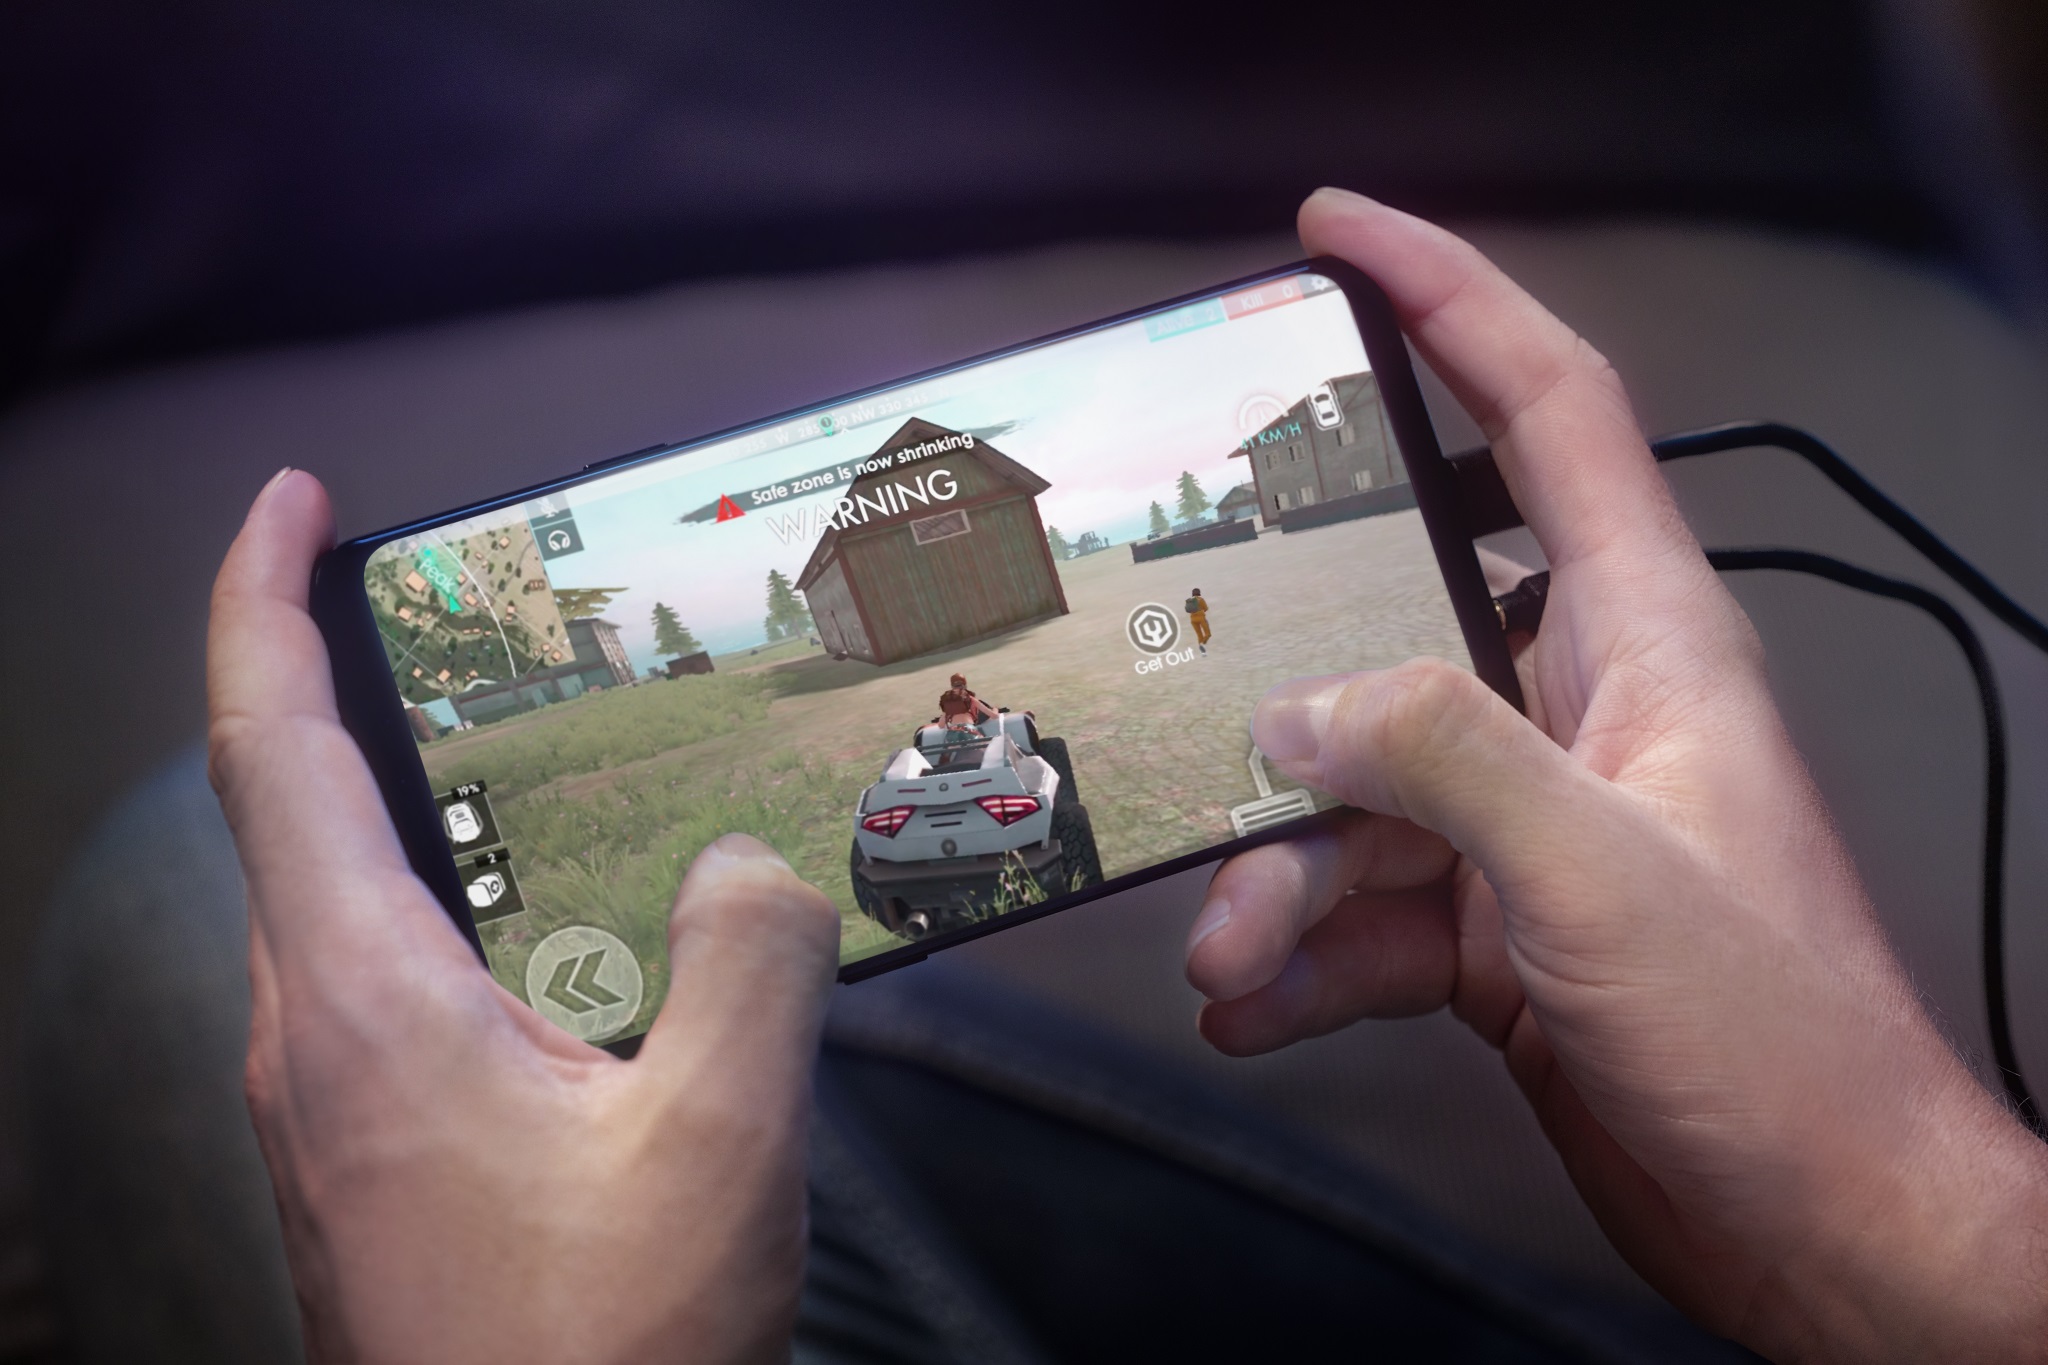 ASUS ROG Phone chính thức trình làng, kỷ nguyên mới cho game thủ